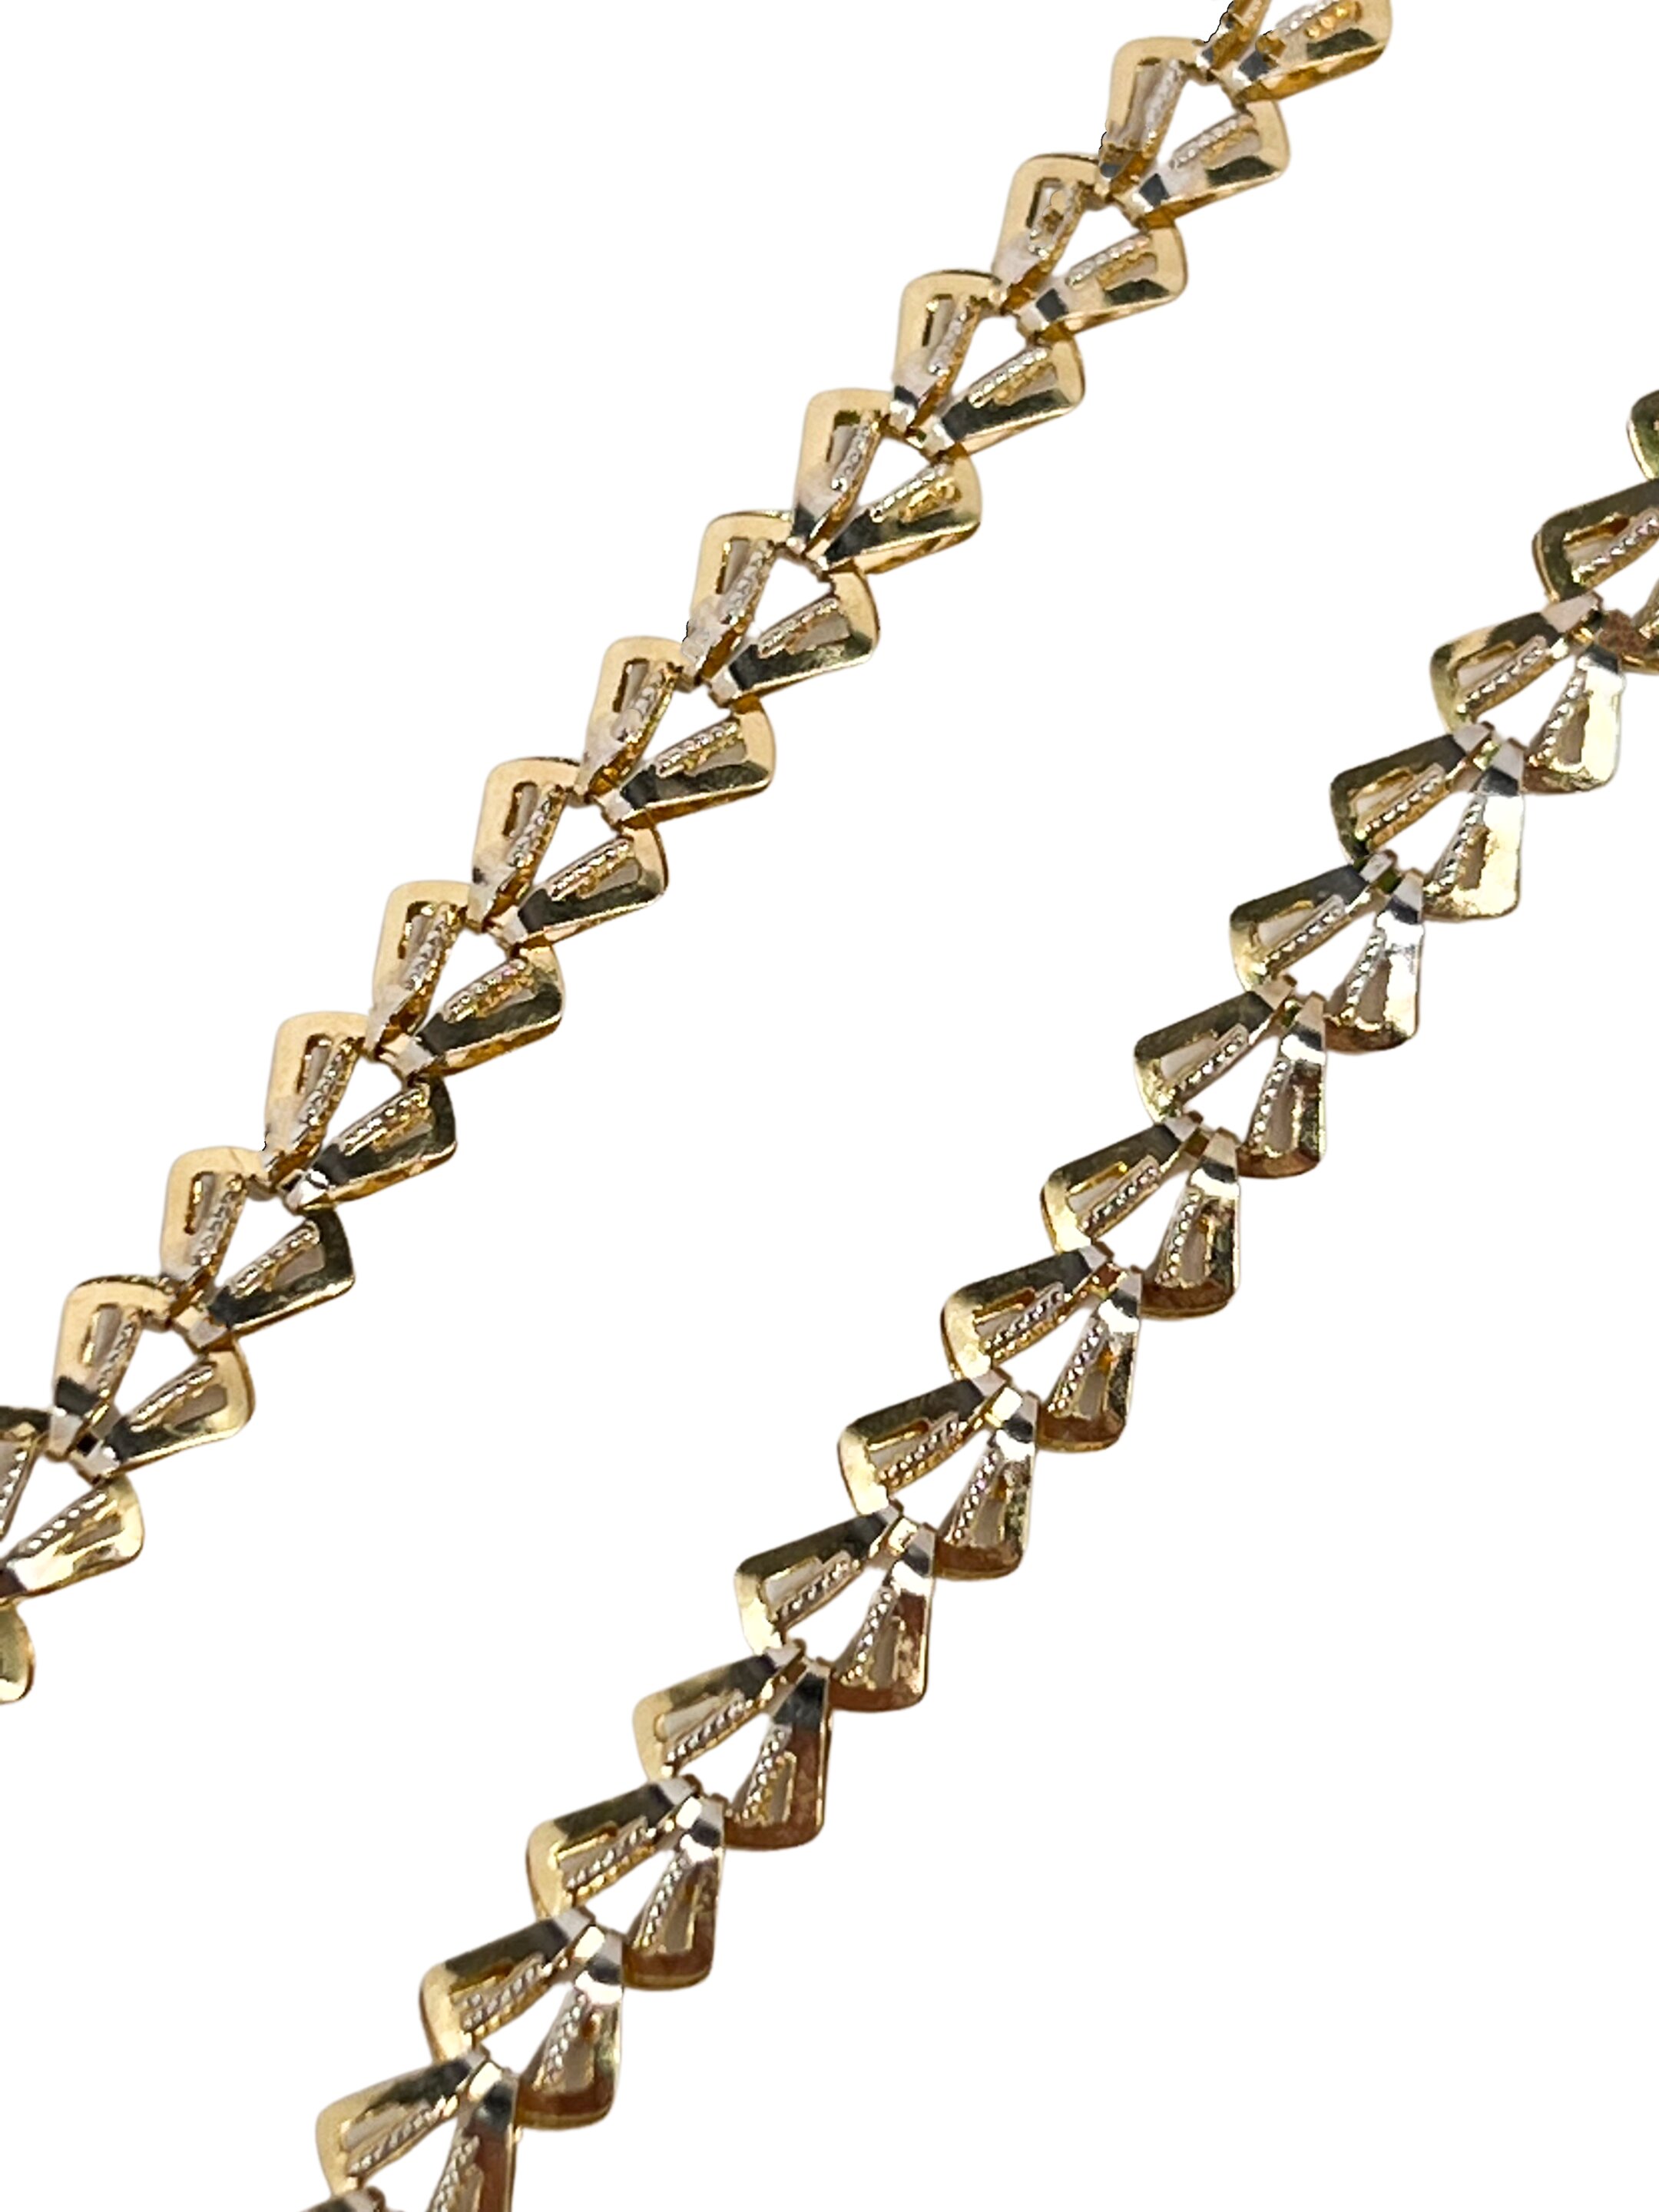 Moderne tofarvet guld halskæde